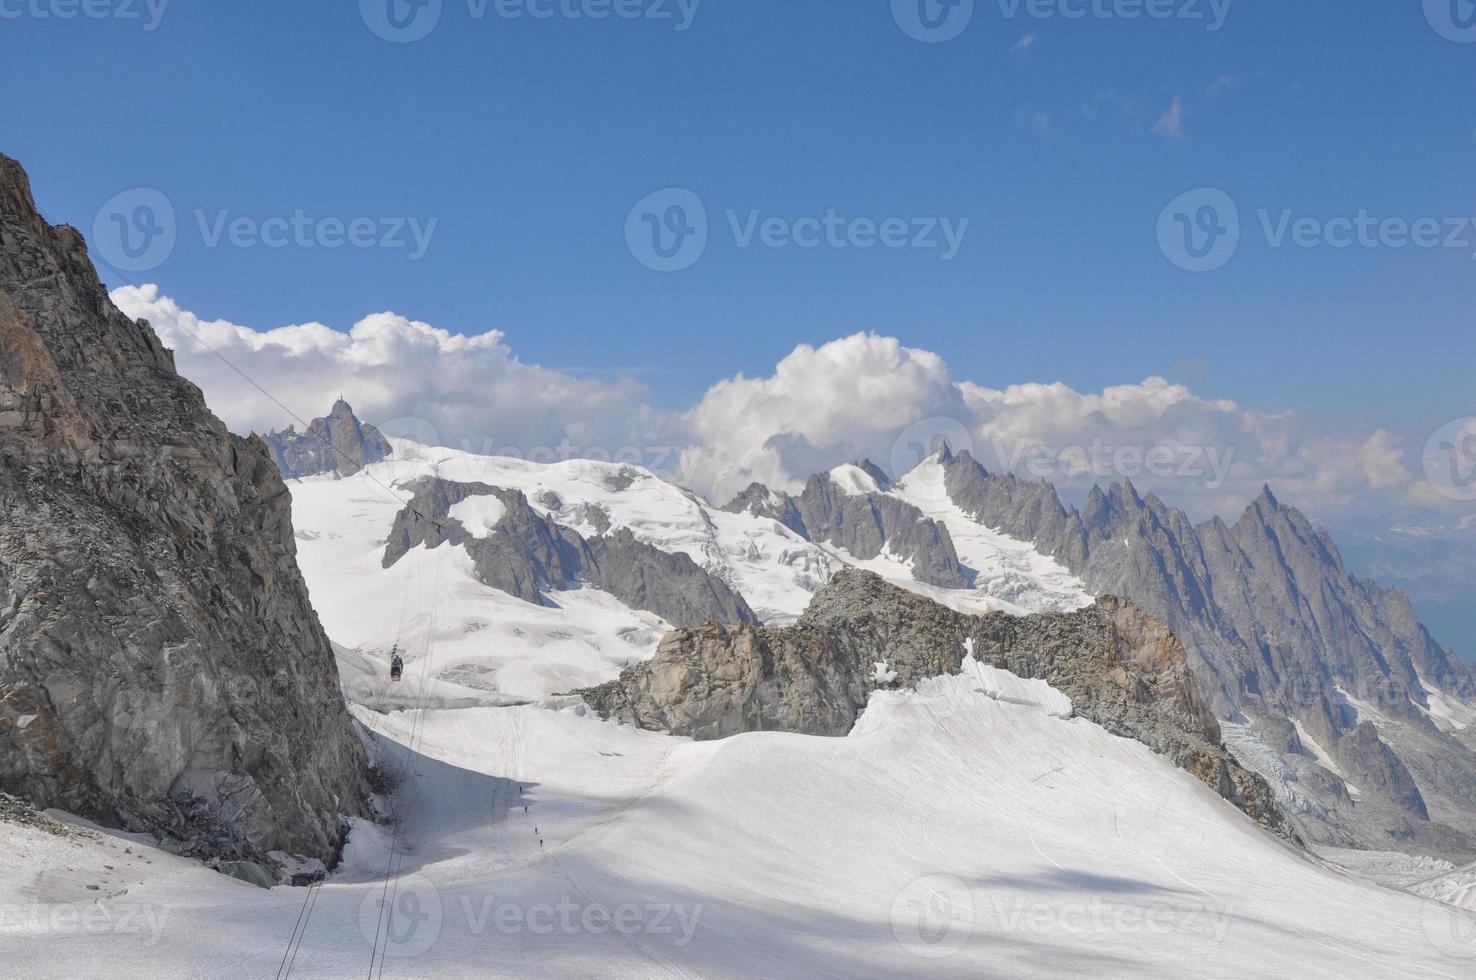 Mont Blanc in Aosta Valley photo